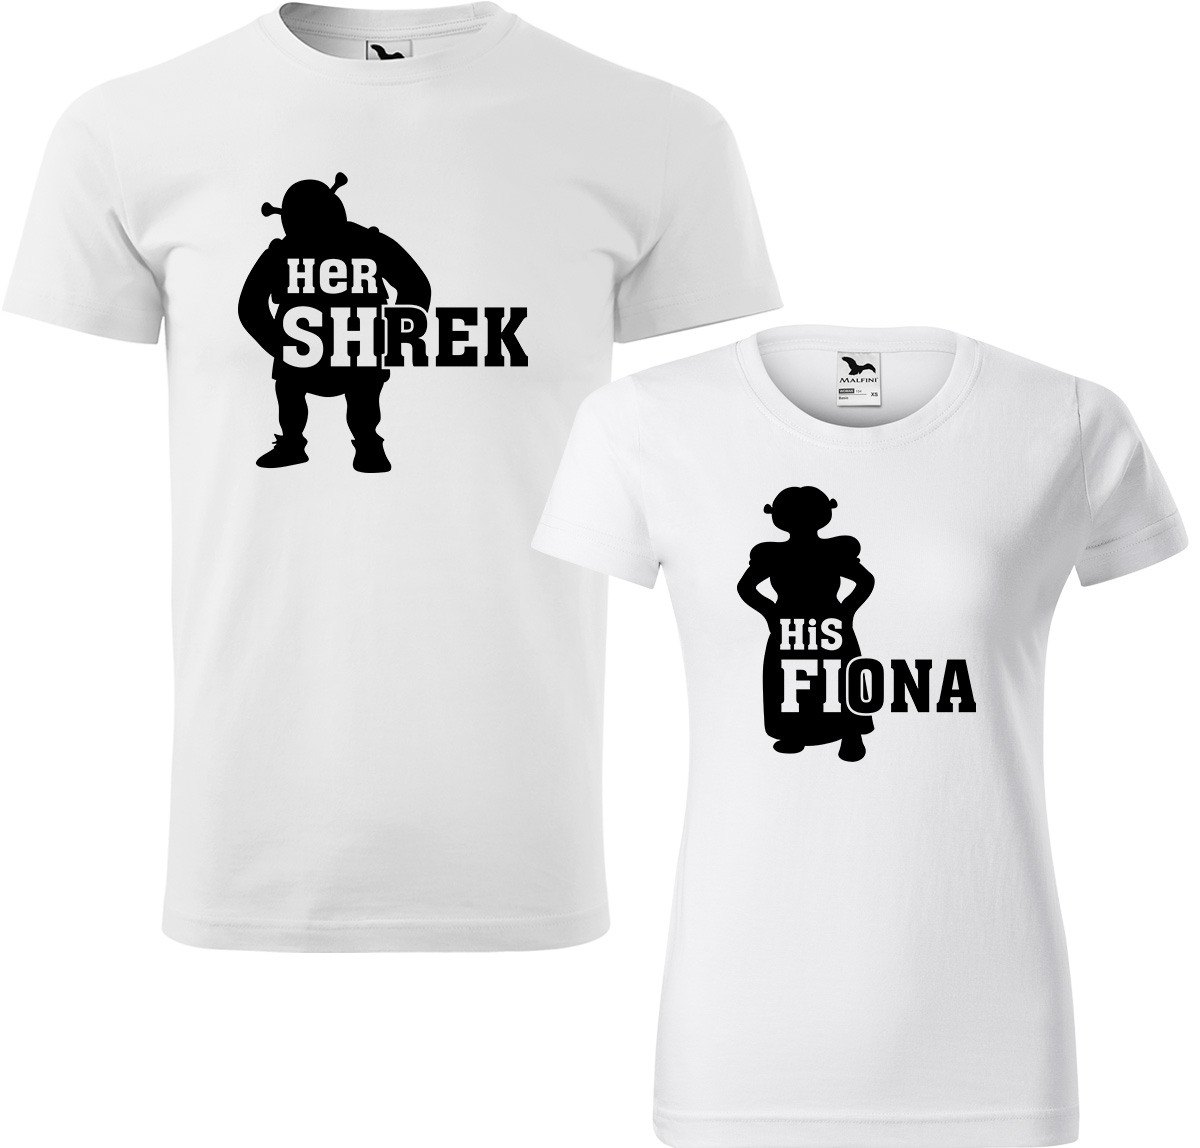 Trička pro páry - Shrek a Fiona Barva: Bílá (00), Velikost dámské tričko: 3XL, Velikost pánské tričko: 4XL